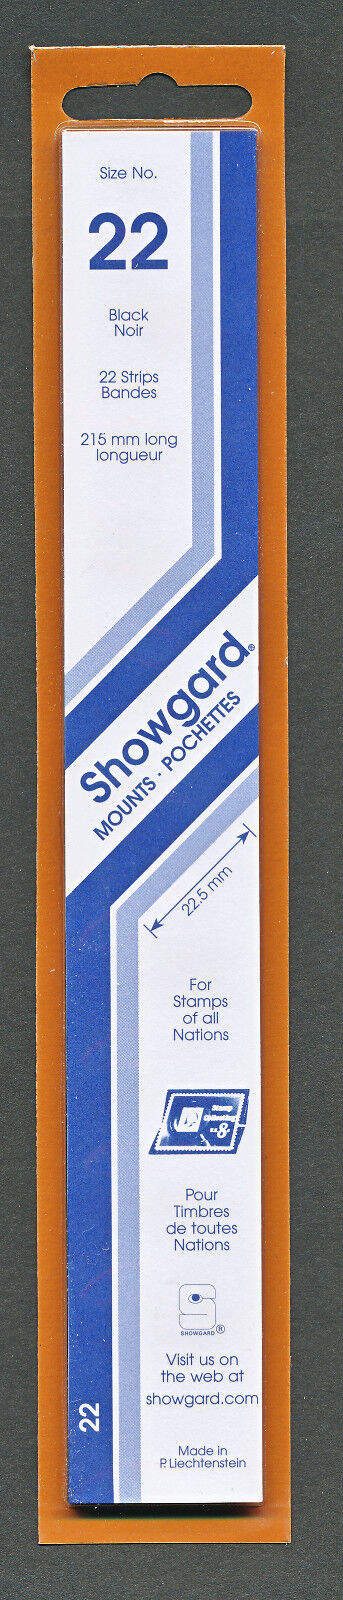 Showgard Stamp Mount 22/215 mm - BLACK - Pack of 22 (22x215  22mm) STRIP Showgard Item No 22